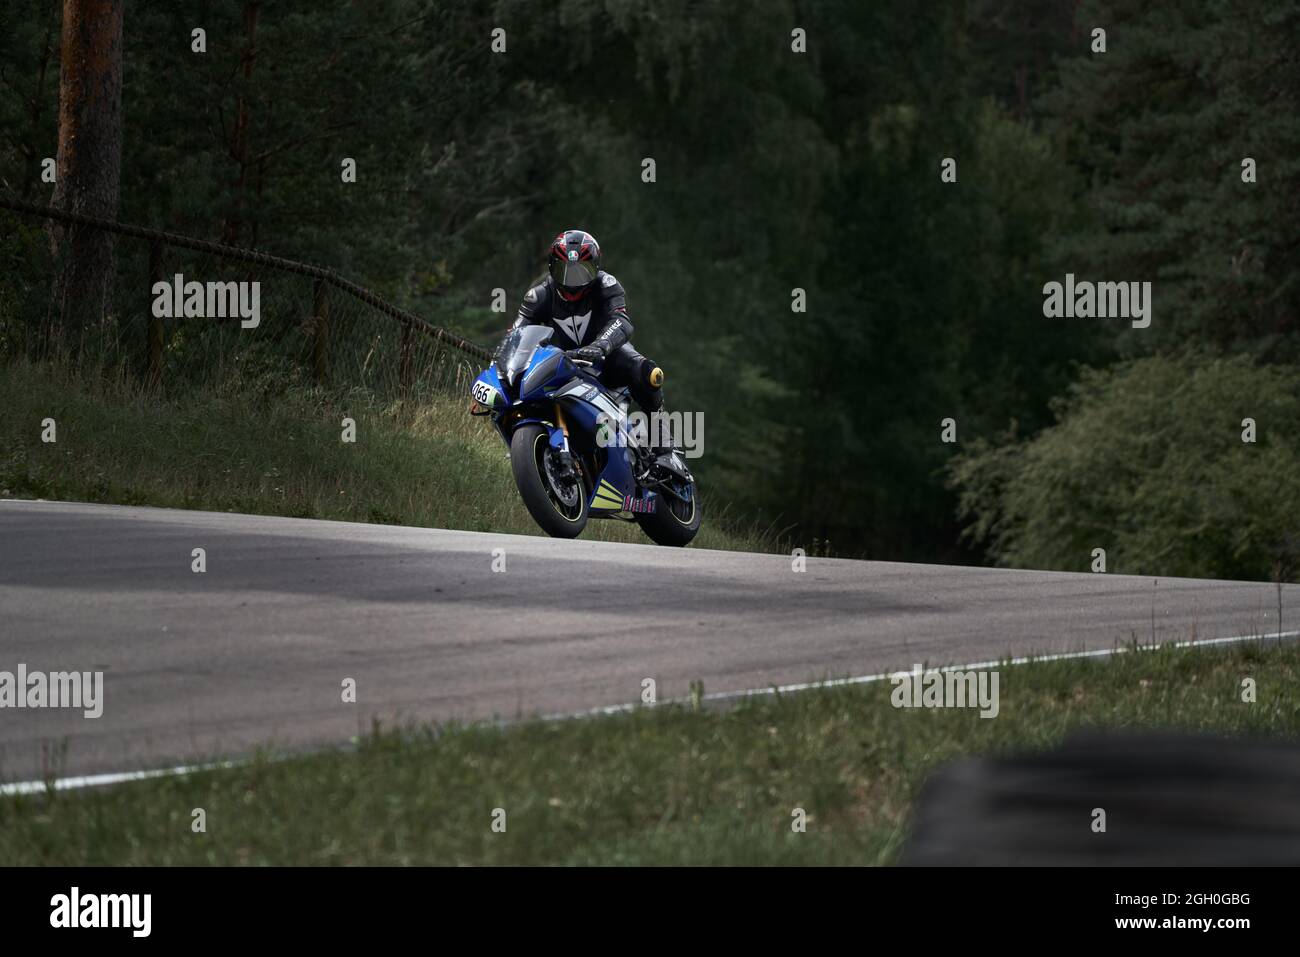 10-05-2021 Lituanie, Kaunas moto Rider, moto moto-cycliste à vélo rapide. Banque D'Images